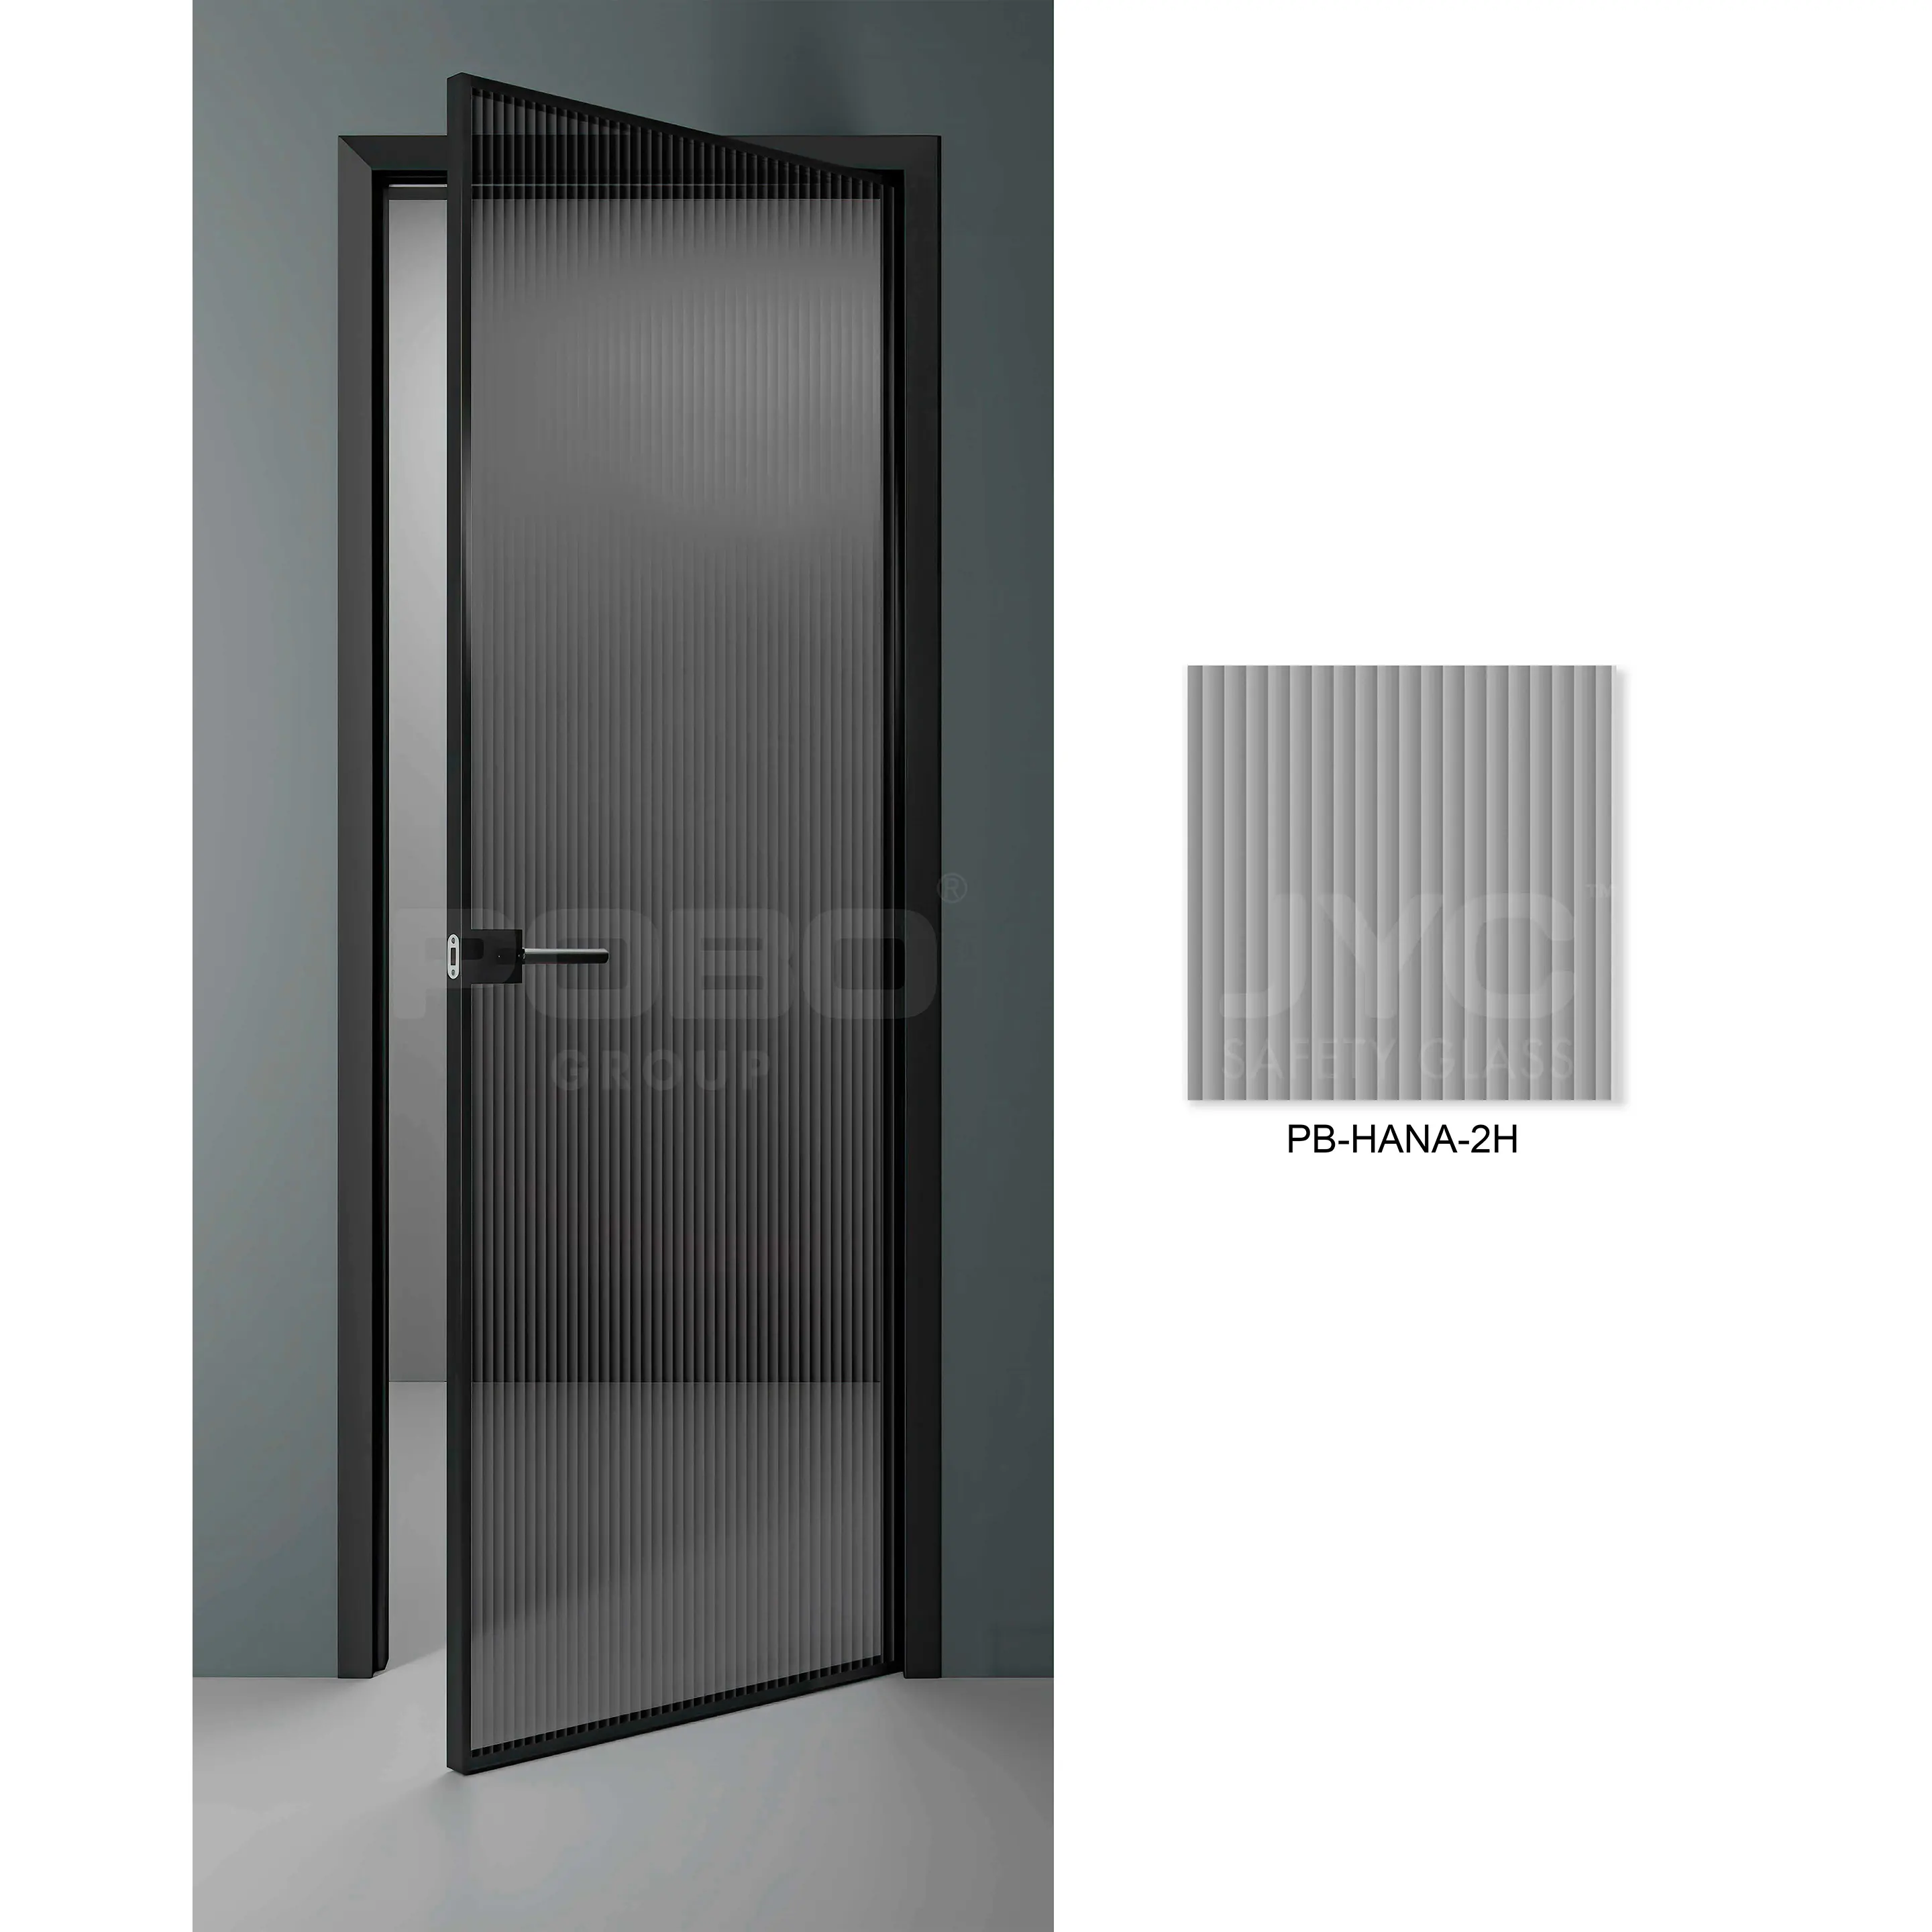 Geleneksel tasarım iç alüminyum kapılar fransız kapıları cam kanatlı kapılar